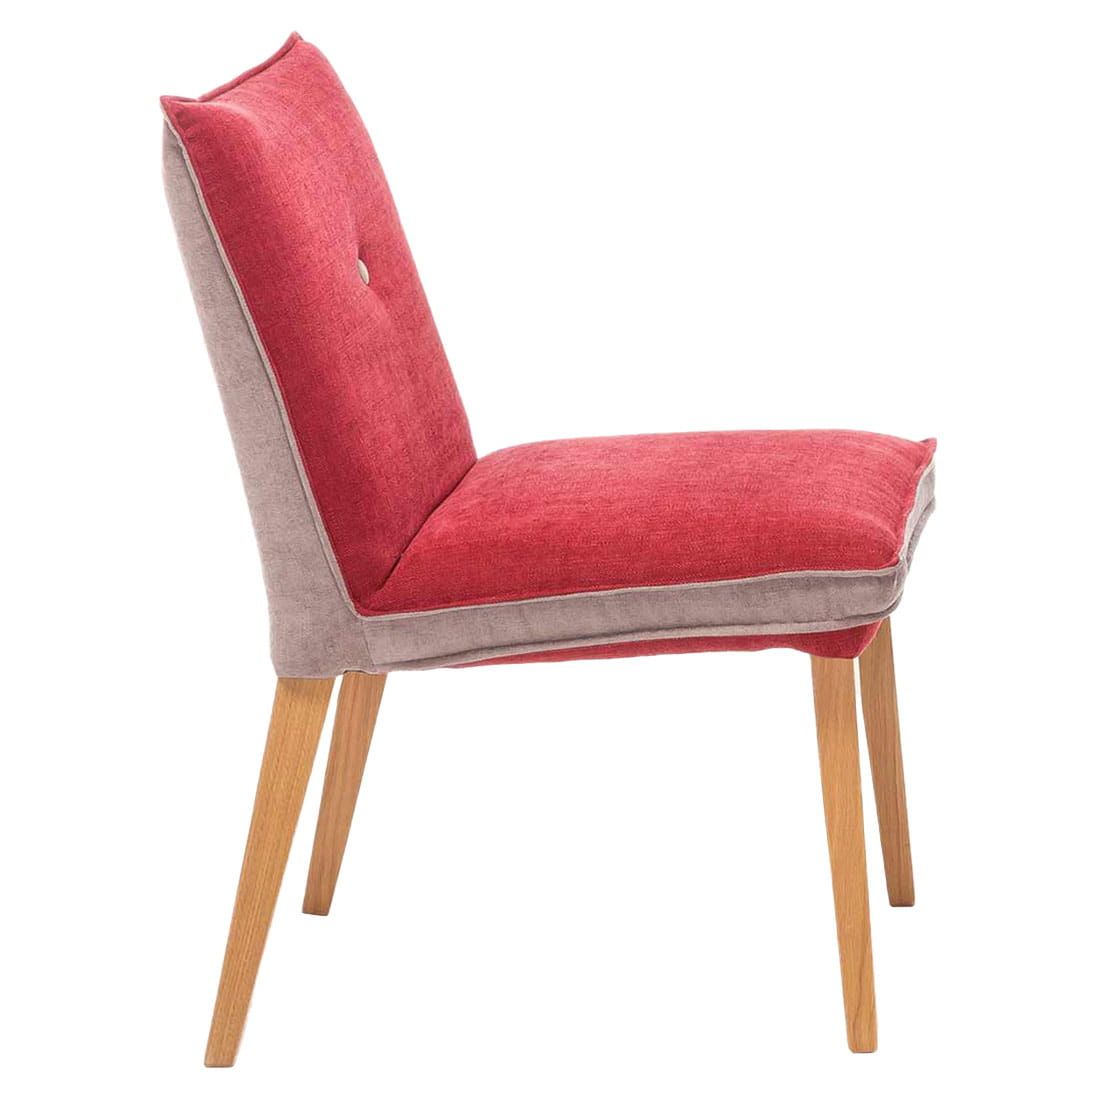 Natur Rot/Beige/Eiche Genua Stuhl Furniture Standard